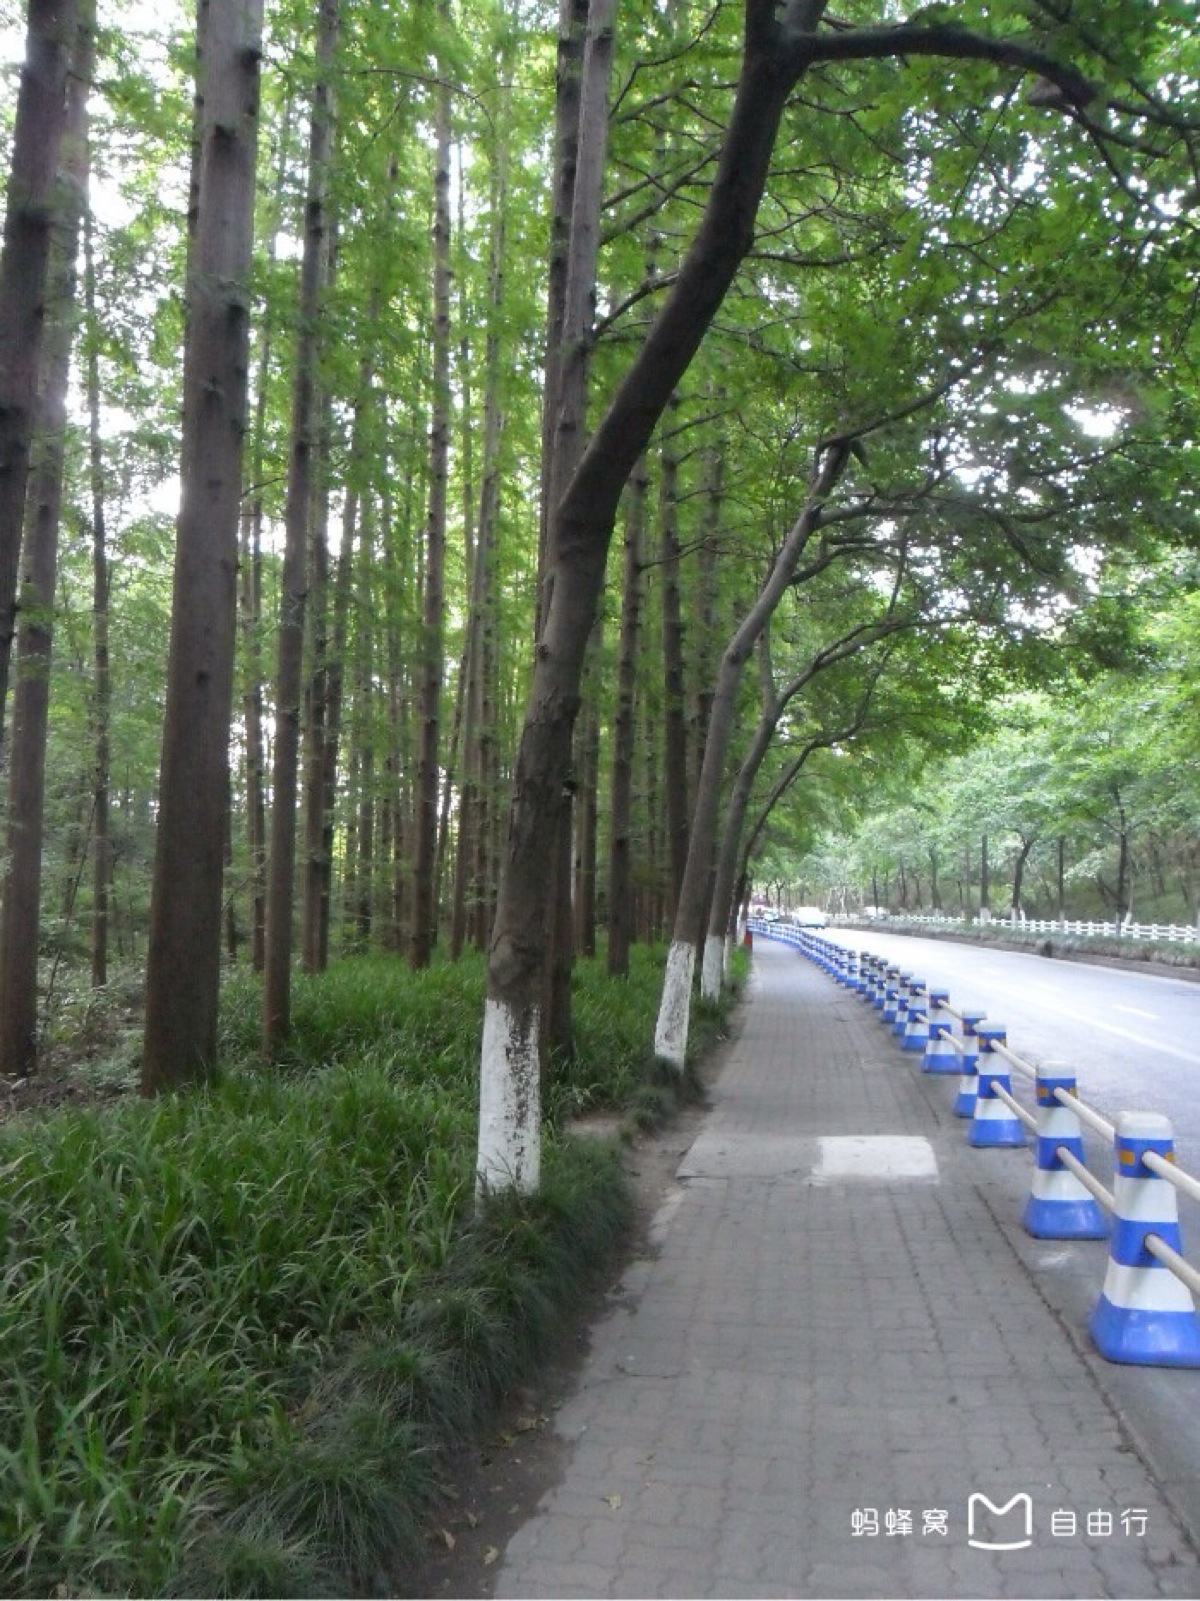 杭州西湖 南山路 第一次去西湖就走的这条路非常宽敞漂亮 树木密集林